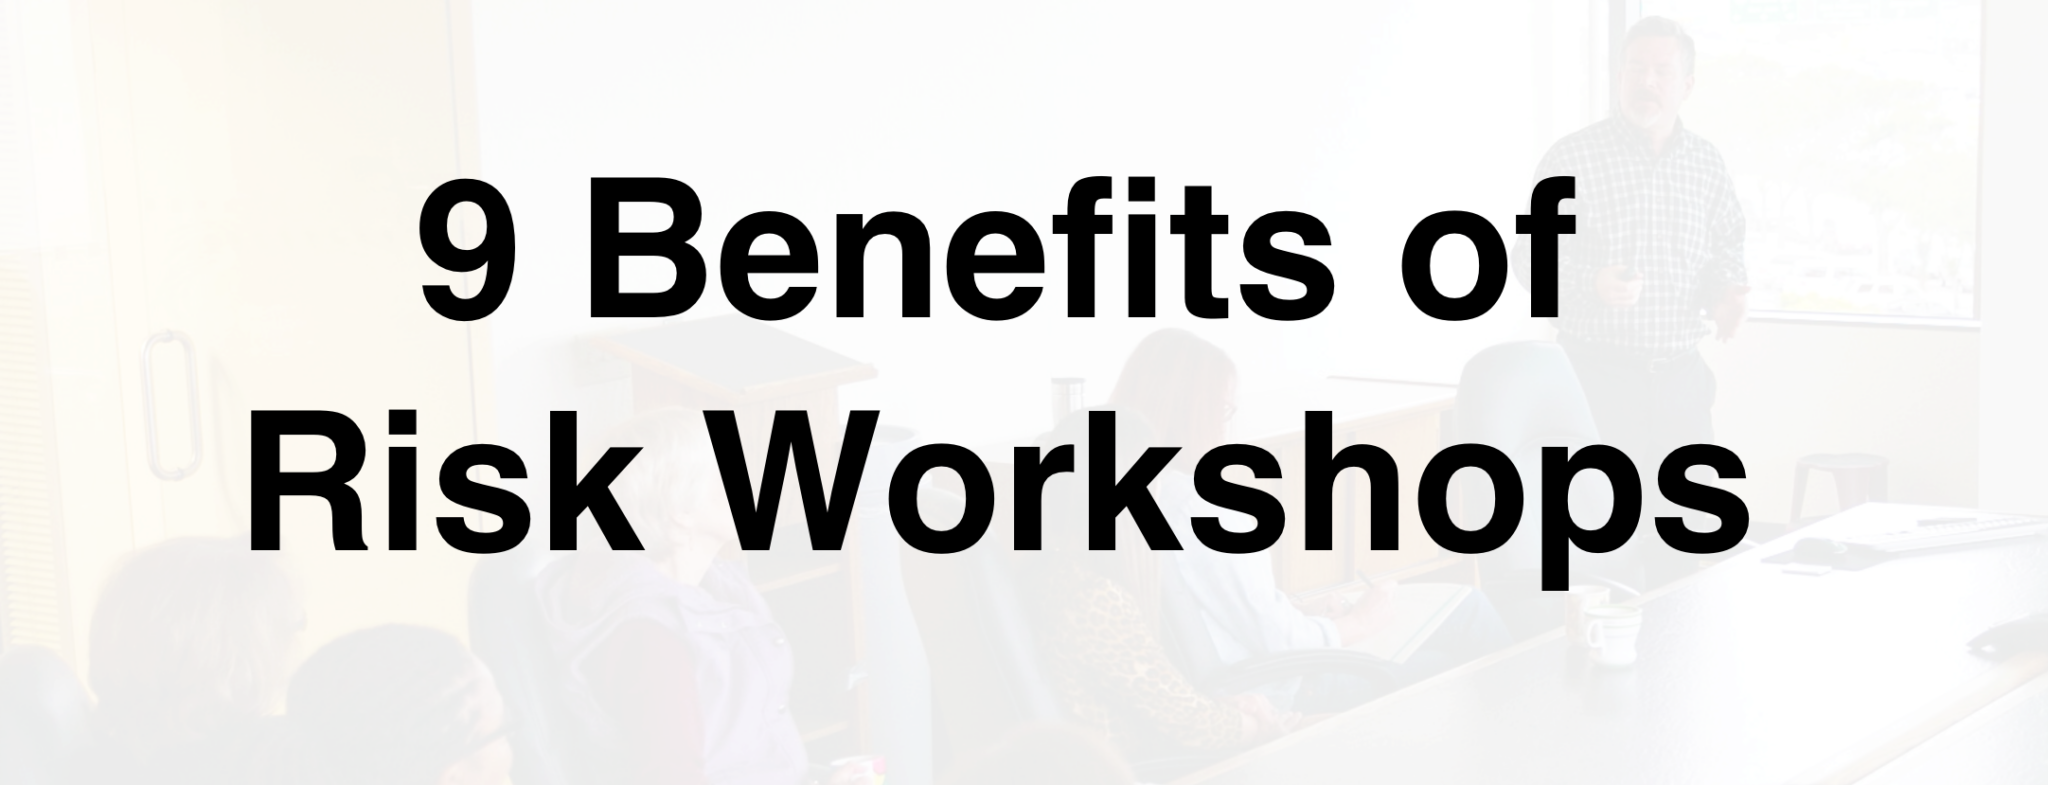 9 Benefits of Risk Workshops